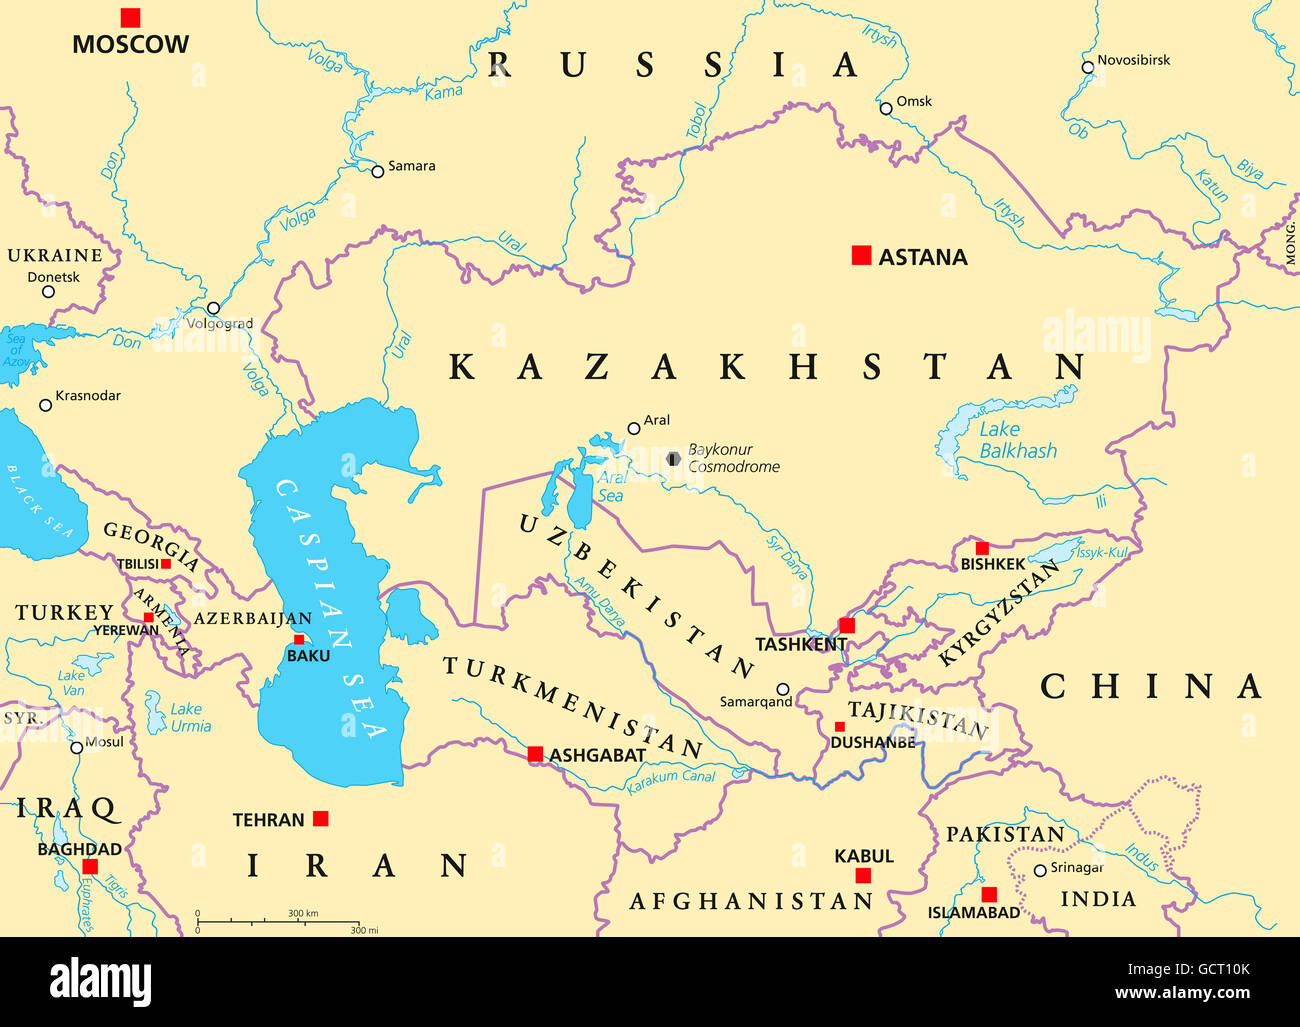 carte asie centrale capitales Caucase et Asie centrale carte politique avec les pays, les 